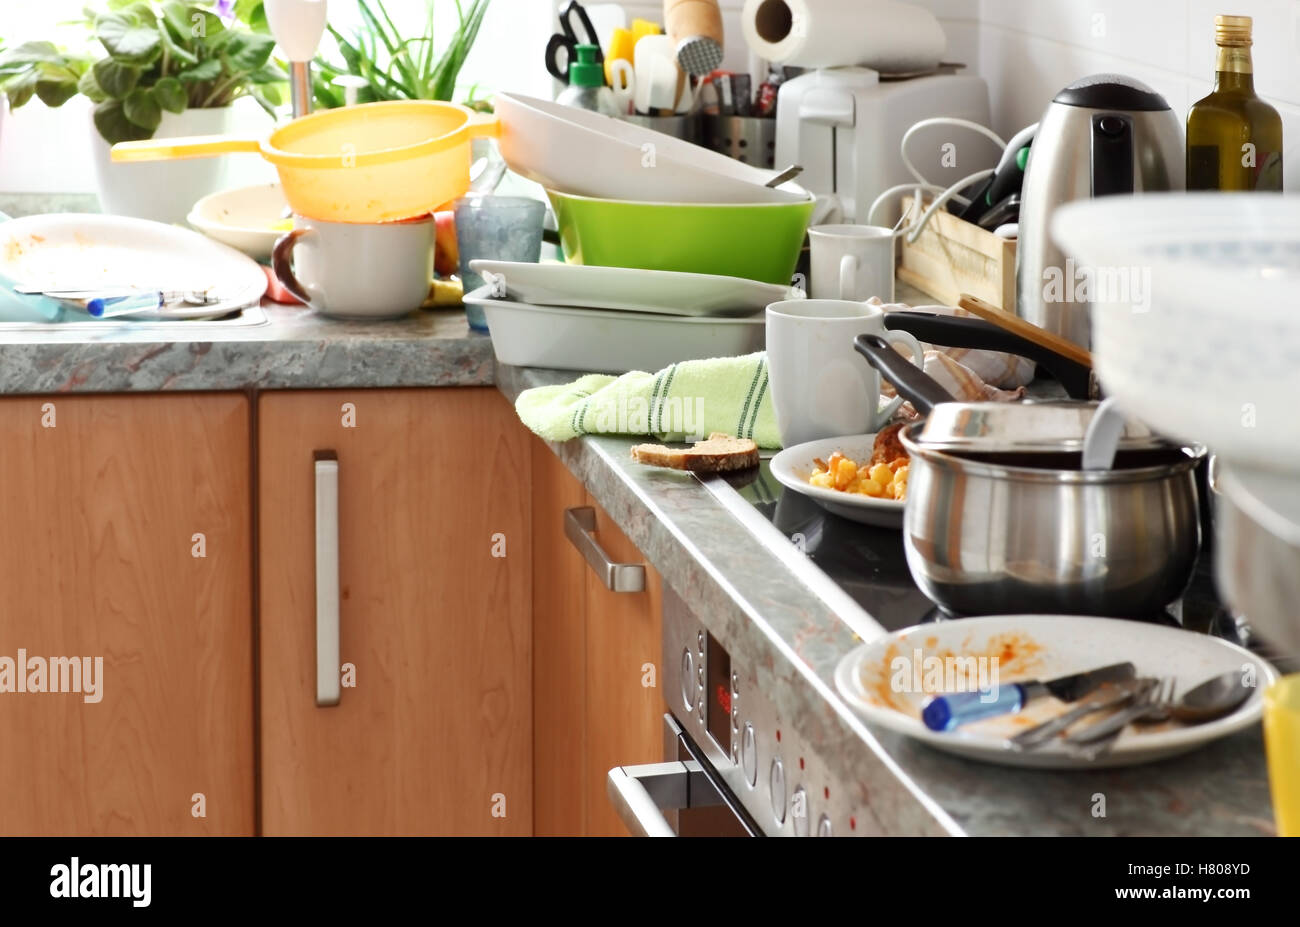 Pile de vaisselle sale dans la cuisine - l'accumulation compulsive Syndrom Banque D'Images